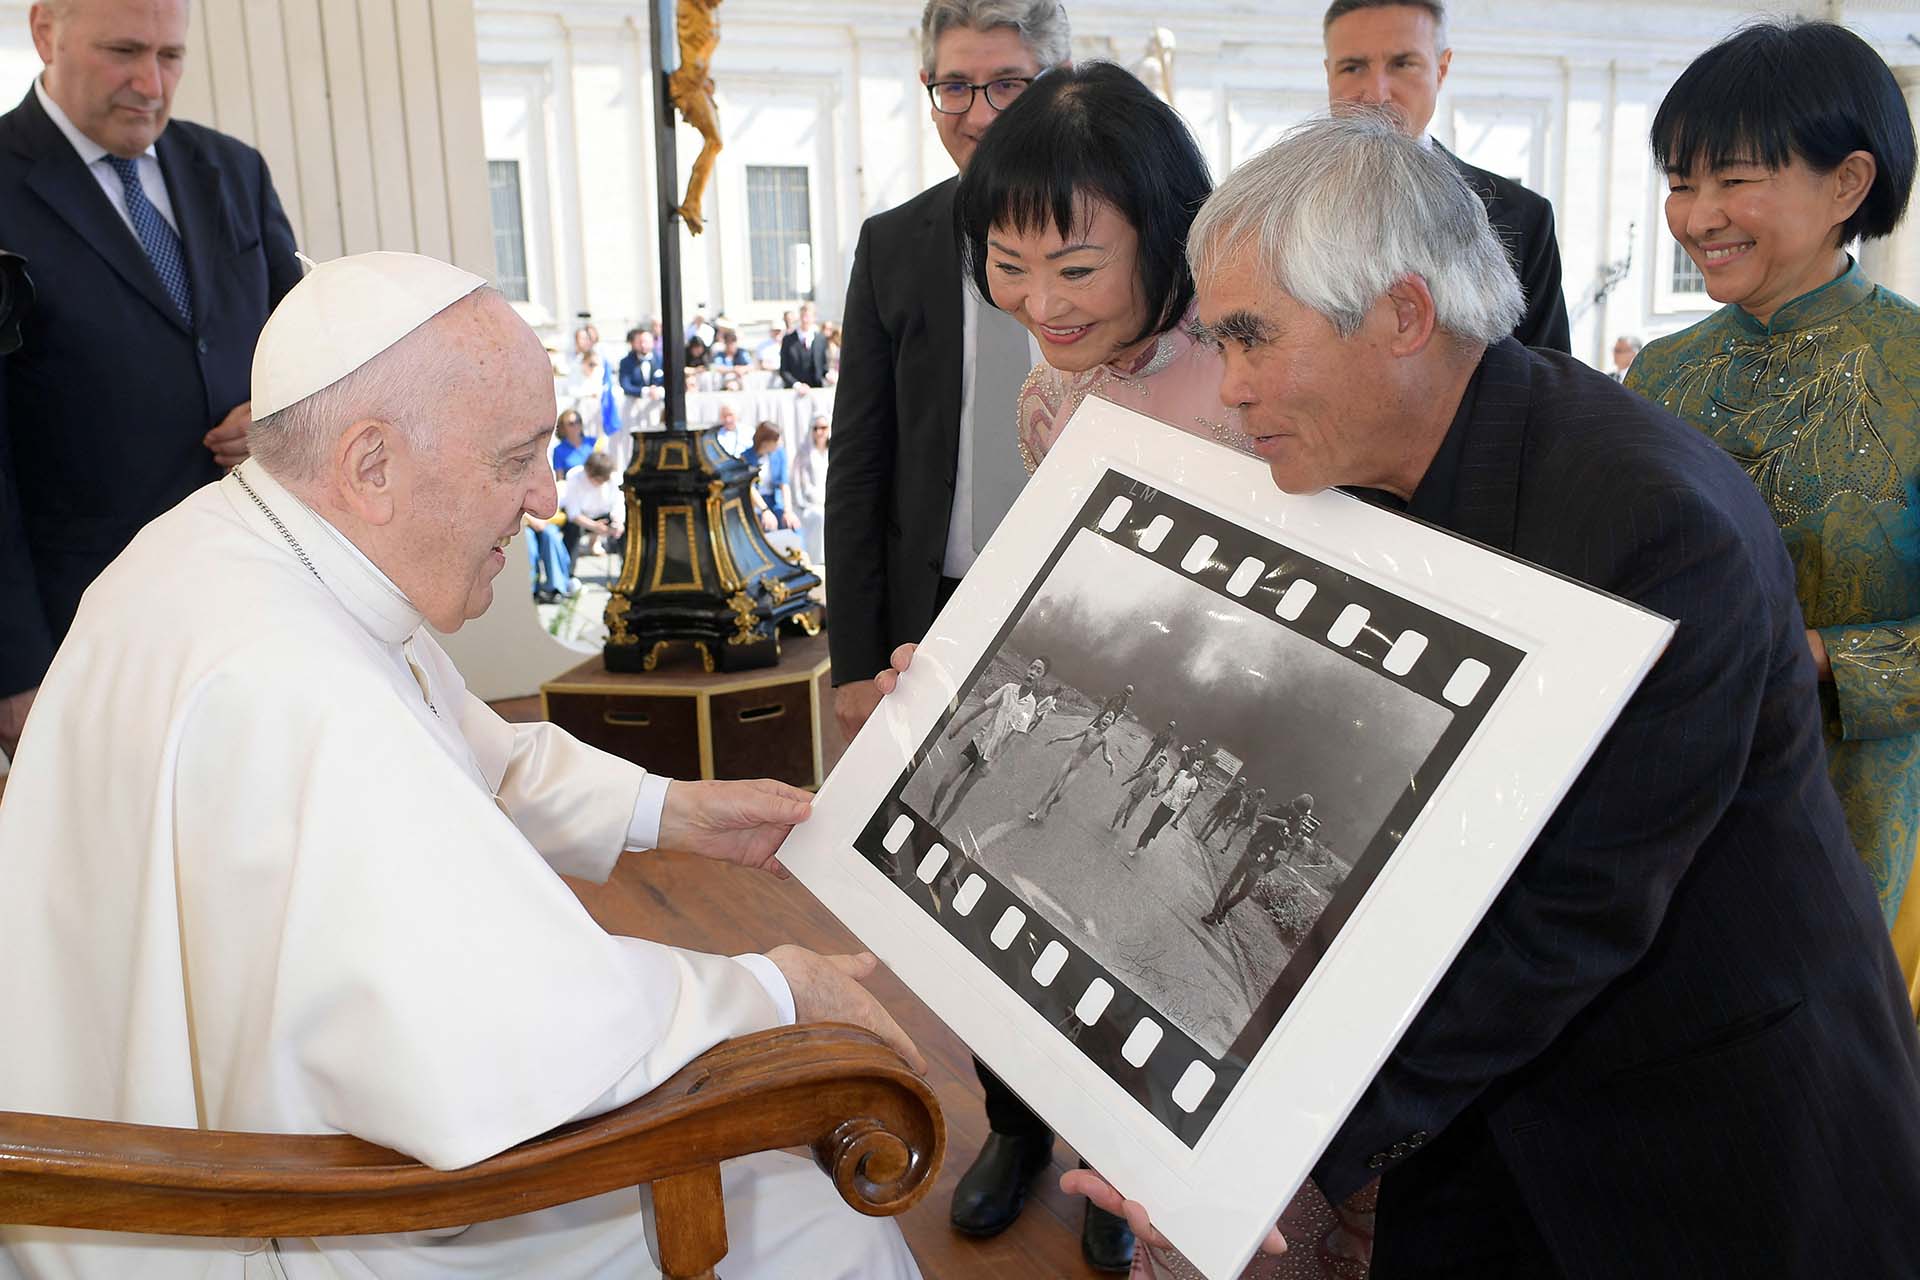 El fotógrafo Nick Ut le muestra al Papa Francisco su foto de 1972 "El terror de la guerra", también conocida como la "Niña del napalm", junto a Kim Phuc, el11 de mayo de 2022 (Medios del Vaticano/Folleto vía REUTERS)
